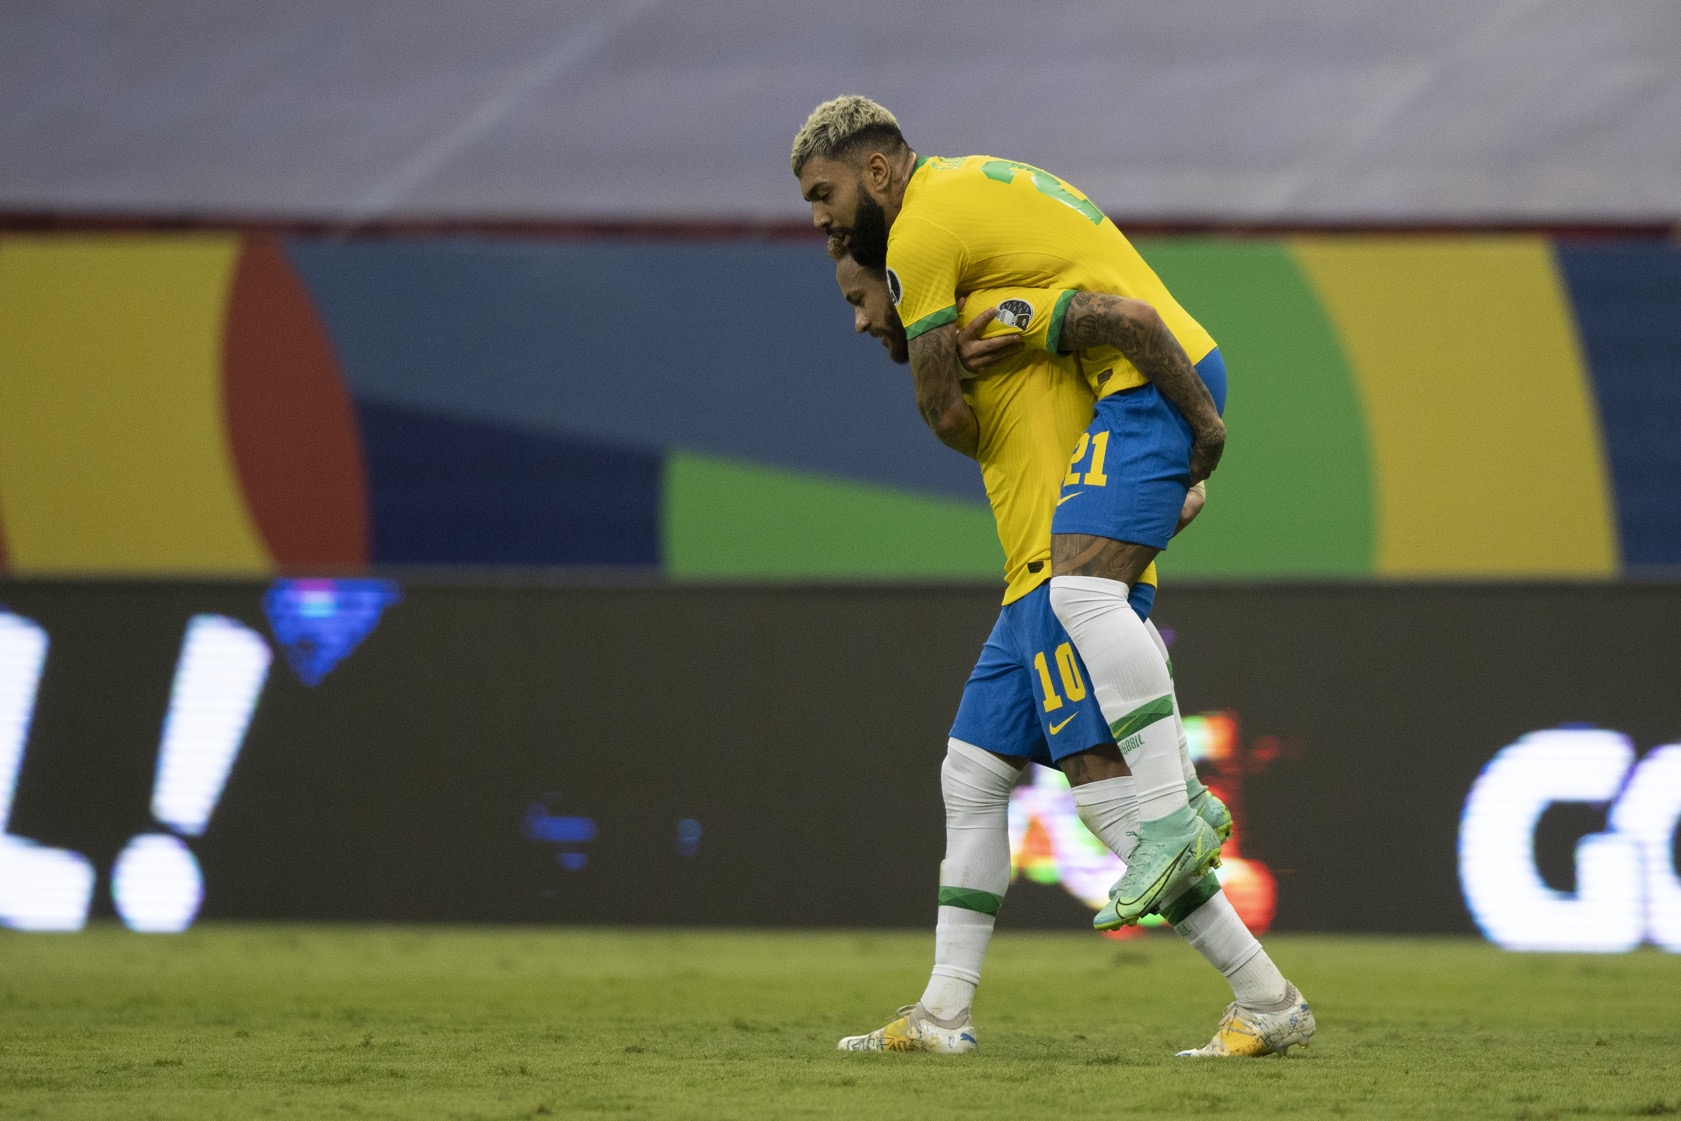 Neymar está a um gol de igualar marca de Pelé com a camisa do